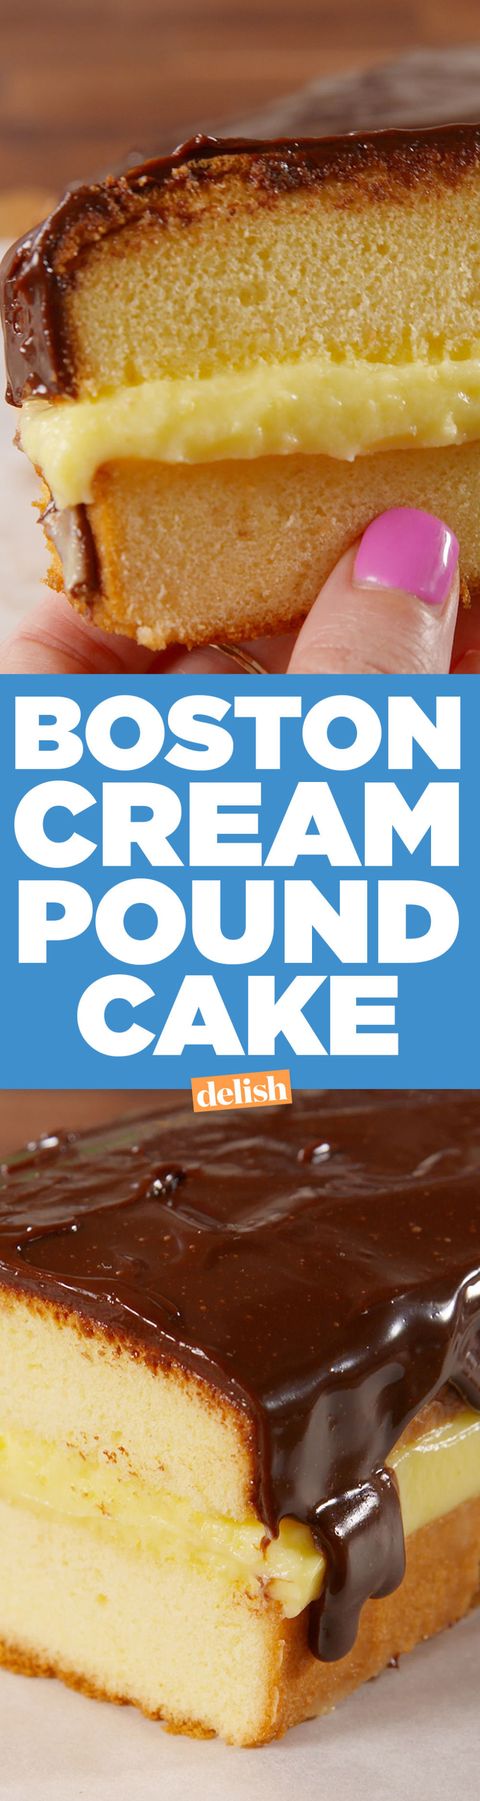 Making Boston Cream Pound Cake Video - How to Make Boston Cream Pound Cake